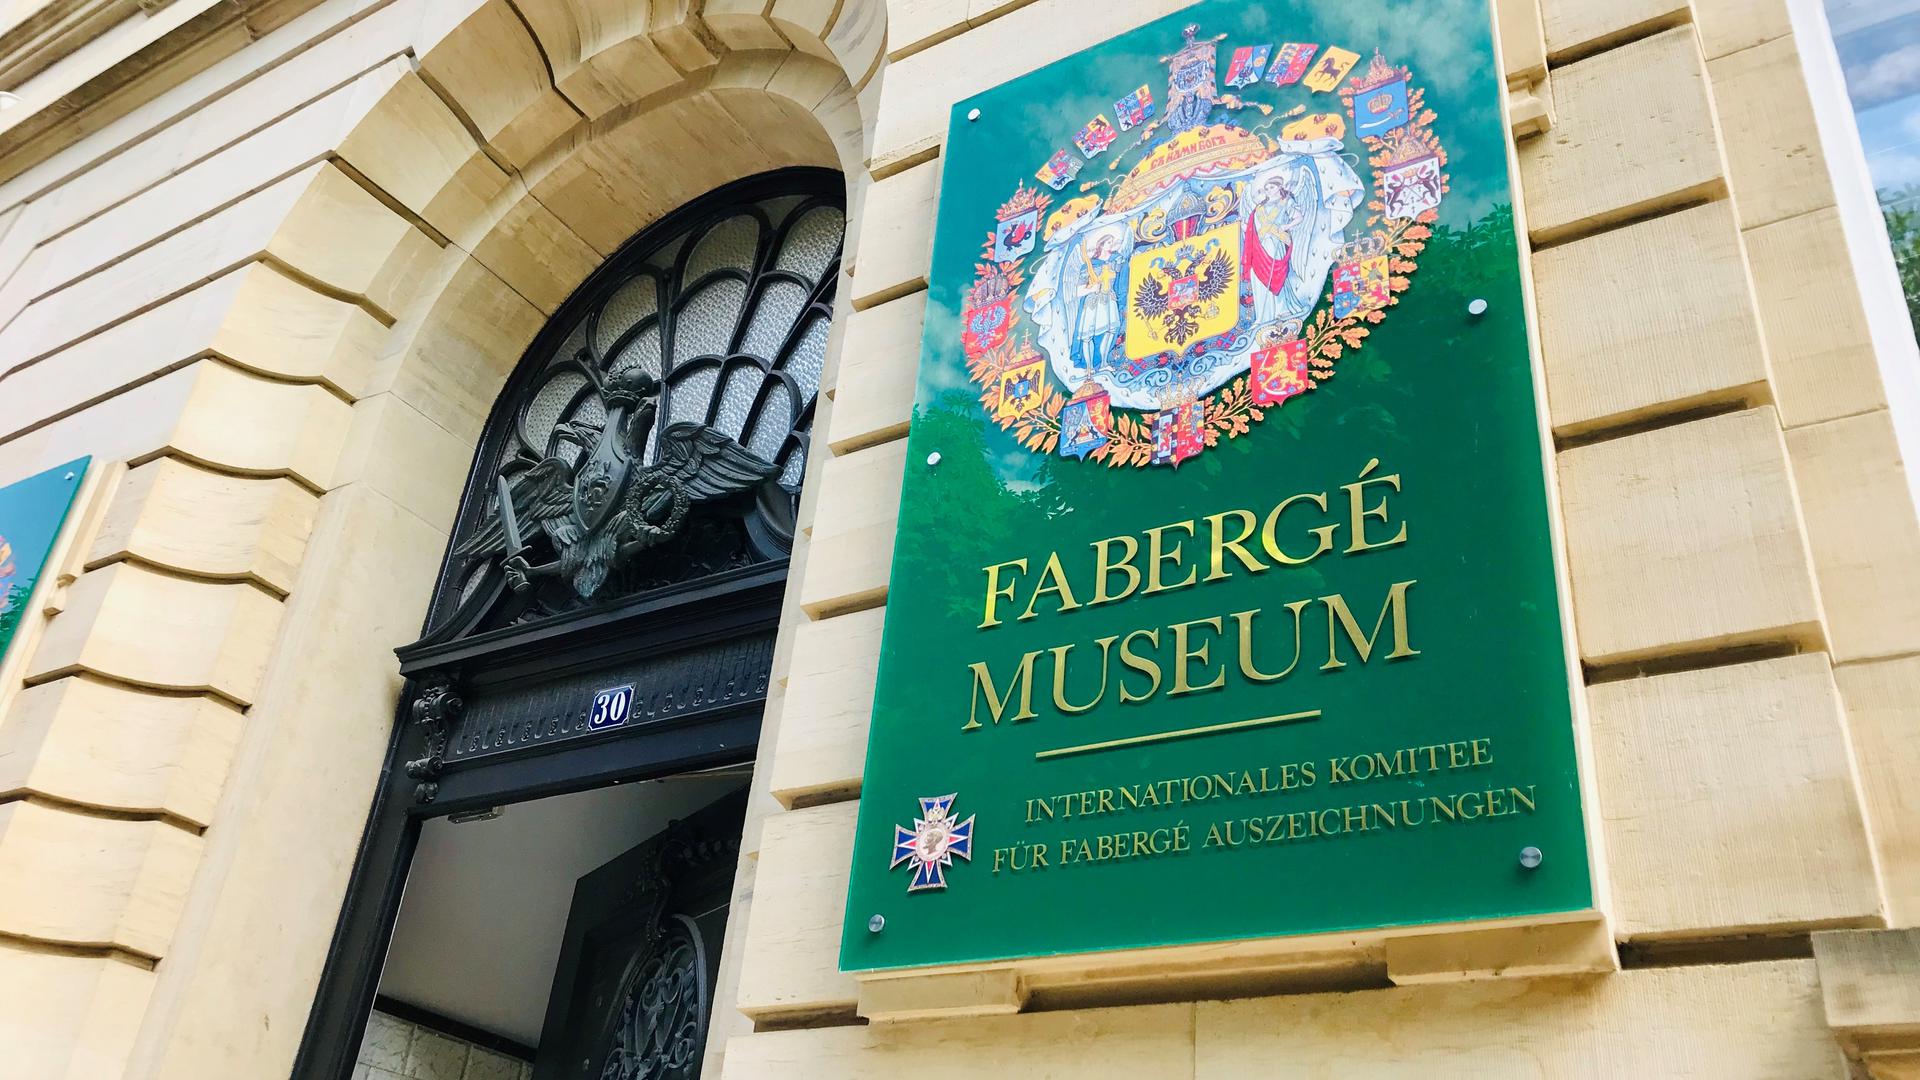 Bleibt auch an diesem Donnerstag, 6. Juni 2019, geschlossen: Das Fabergé-Museum in Baden-Baden